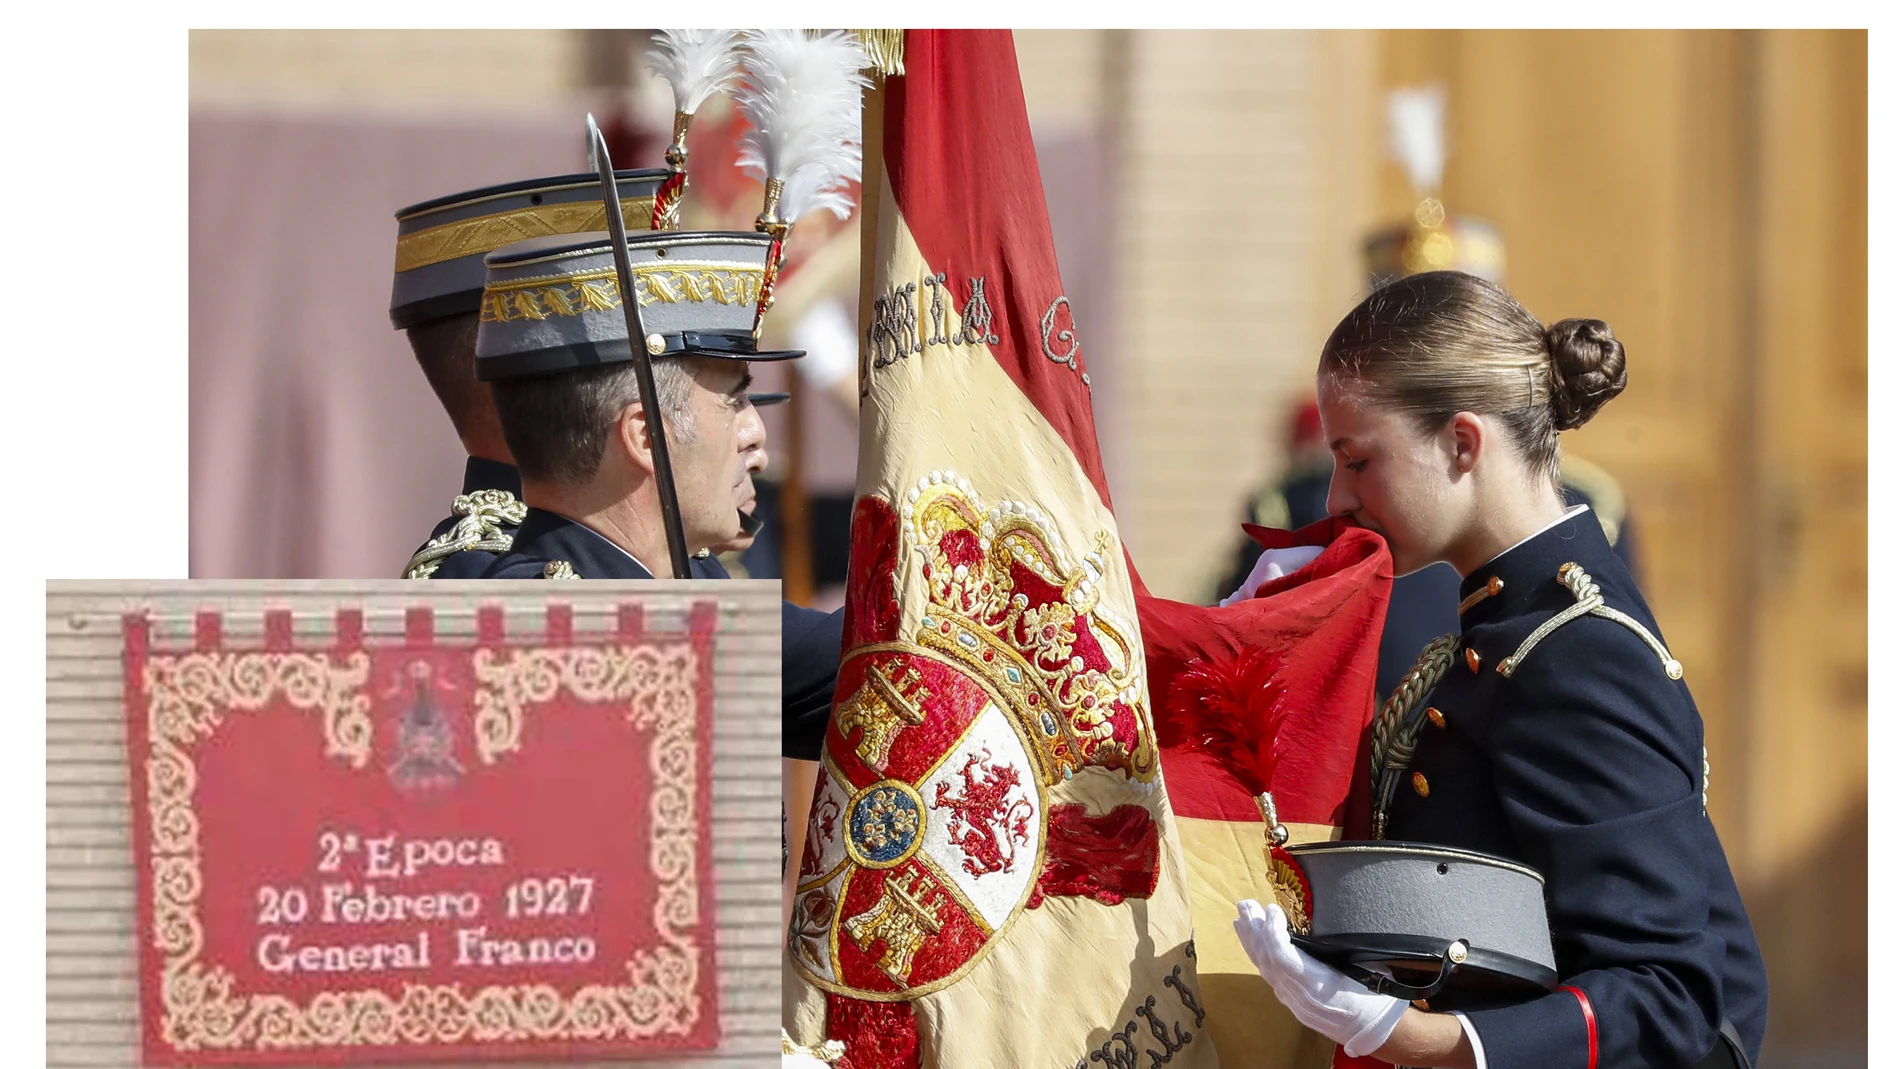 El pendón repostero que alude a Franco se pudo ver en la ceremonia de jura de bandera de la princesa de Asturias, Leonor de Borbón, celebrada en la Academia Militar de Zaragoza.